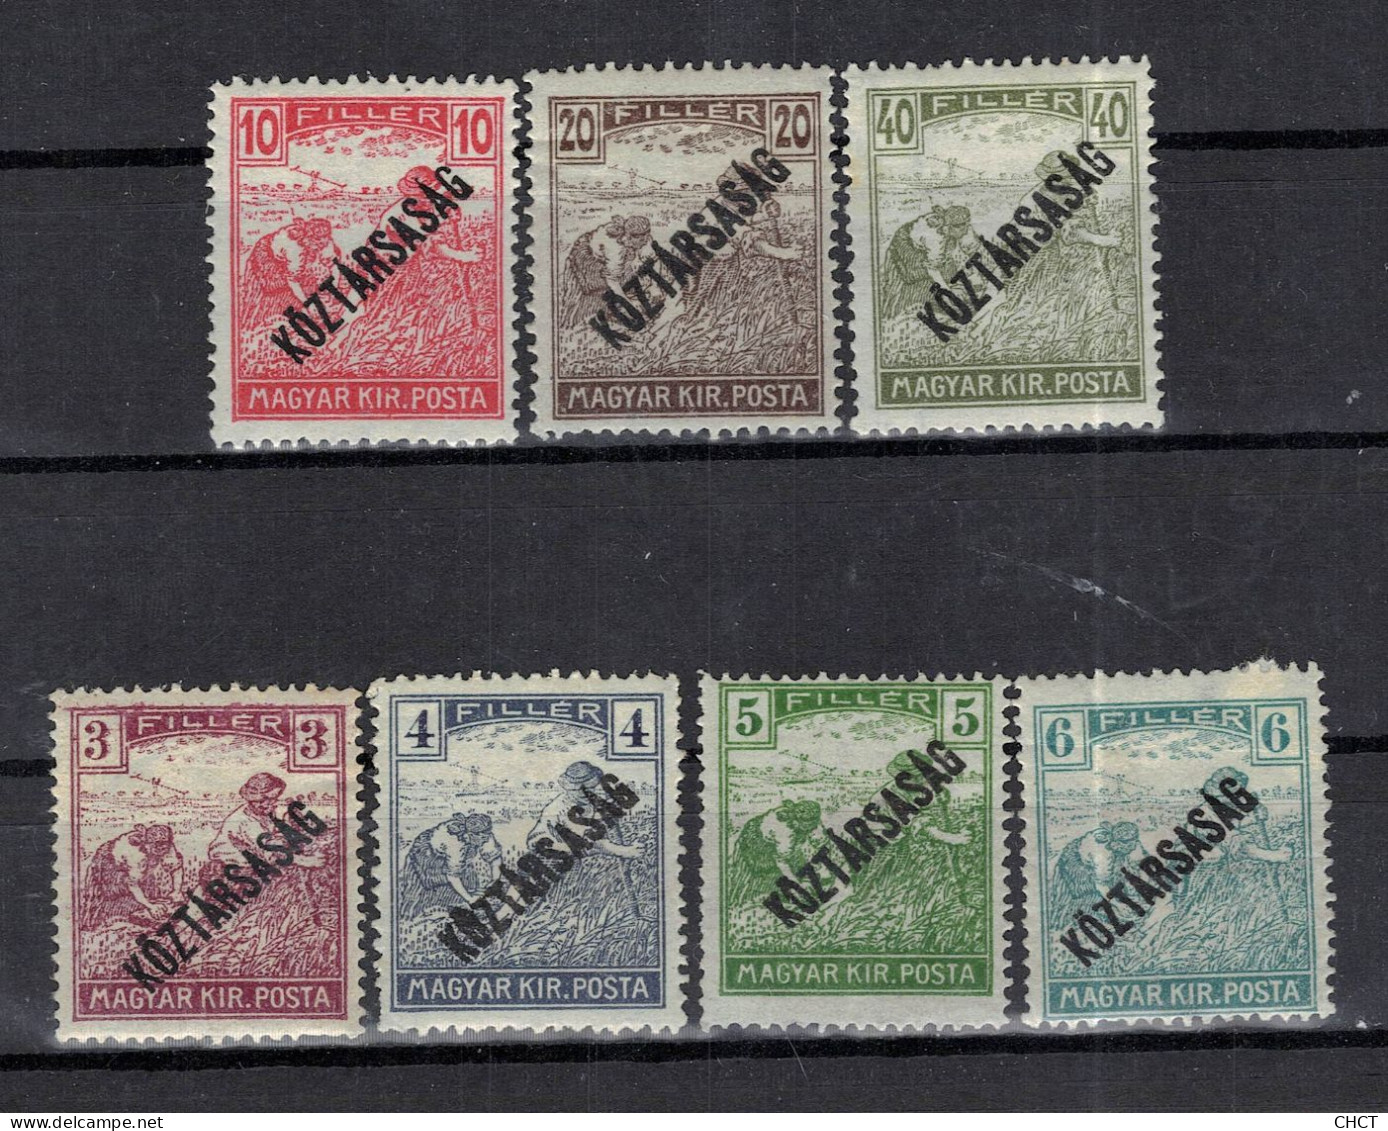 DHCT14 - Reaper, 1918, Koztarsasag Overprint, MH, Hungary - Unused Stamps